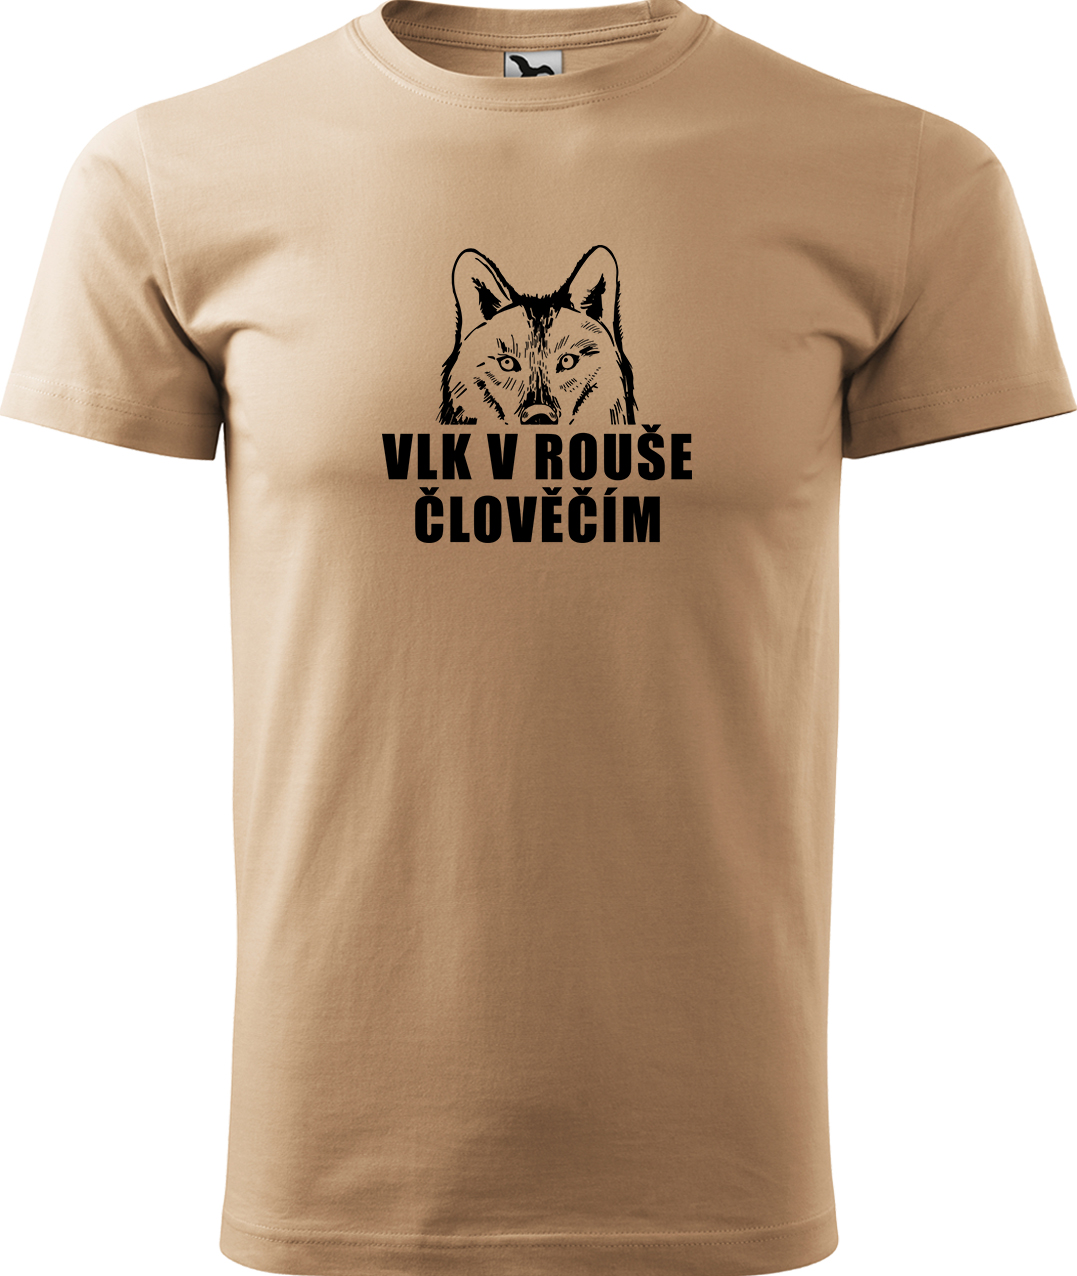 Pánské tričko s vlkem - Vlk v rouše člověčím Velikost: XL, Barva: Písková (08), Střih: pánský